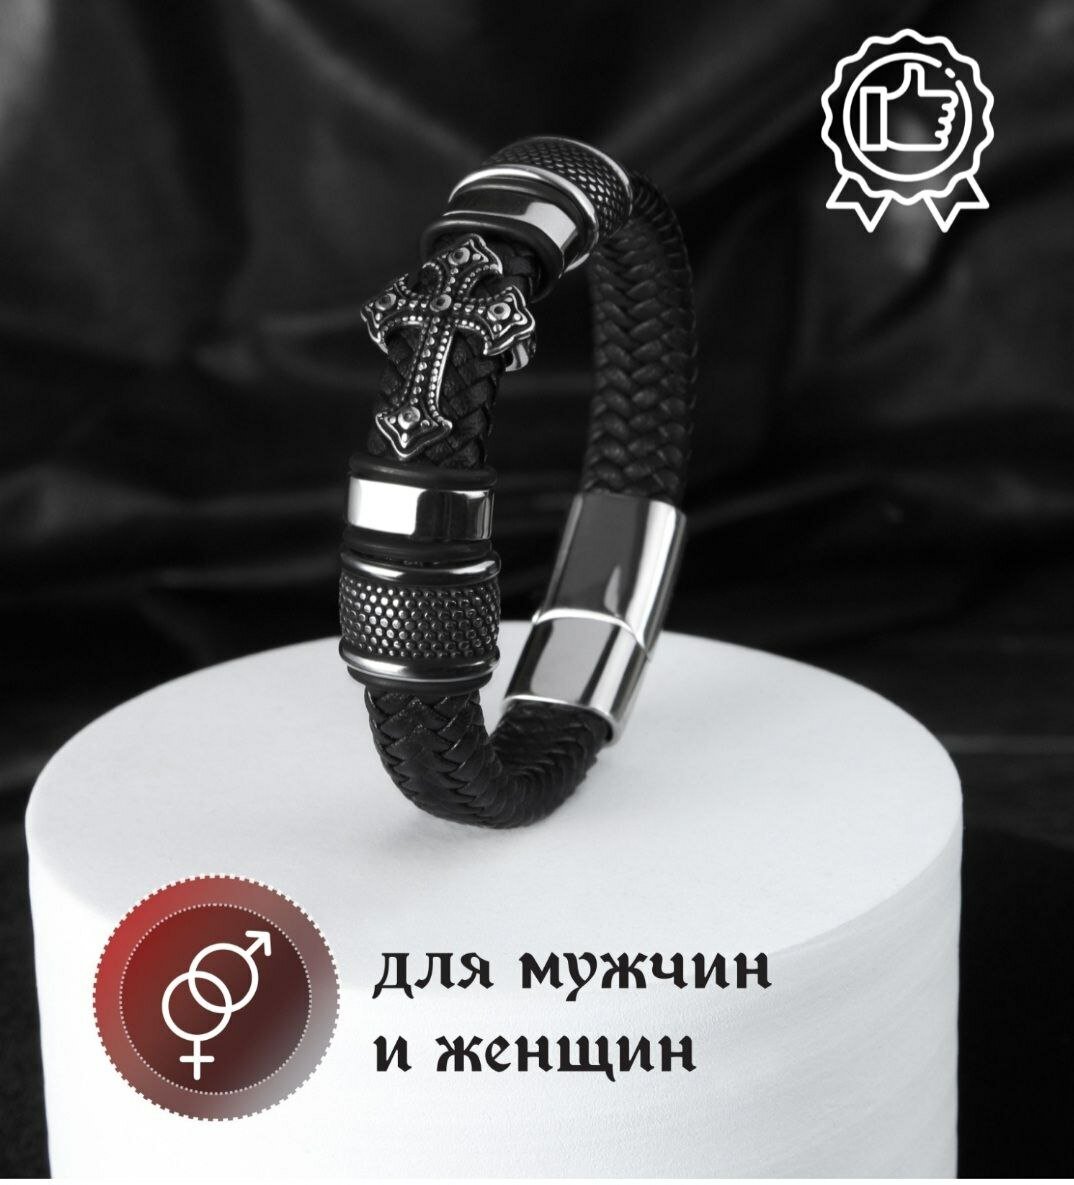 Славянский оберег, плетеный браслет Браслет мужской кожаный, бижутерия, украшение на руку, металл